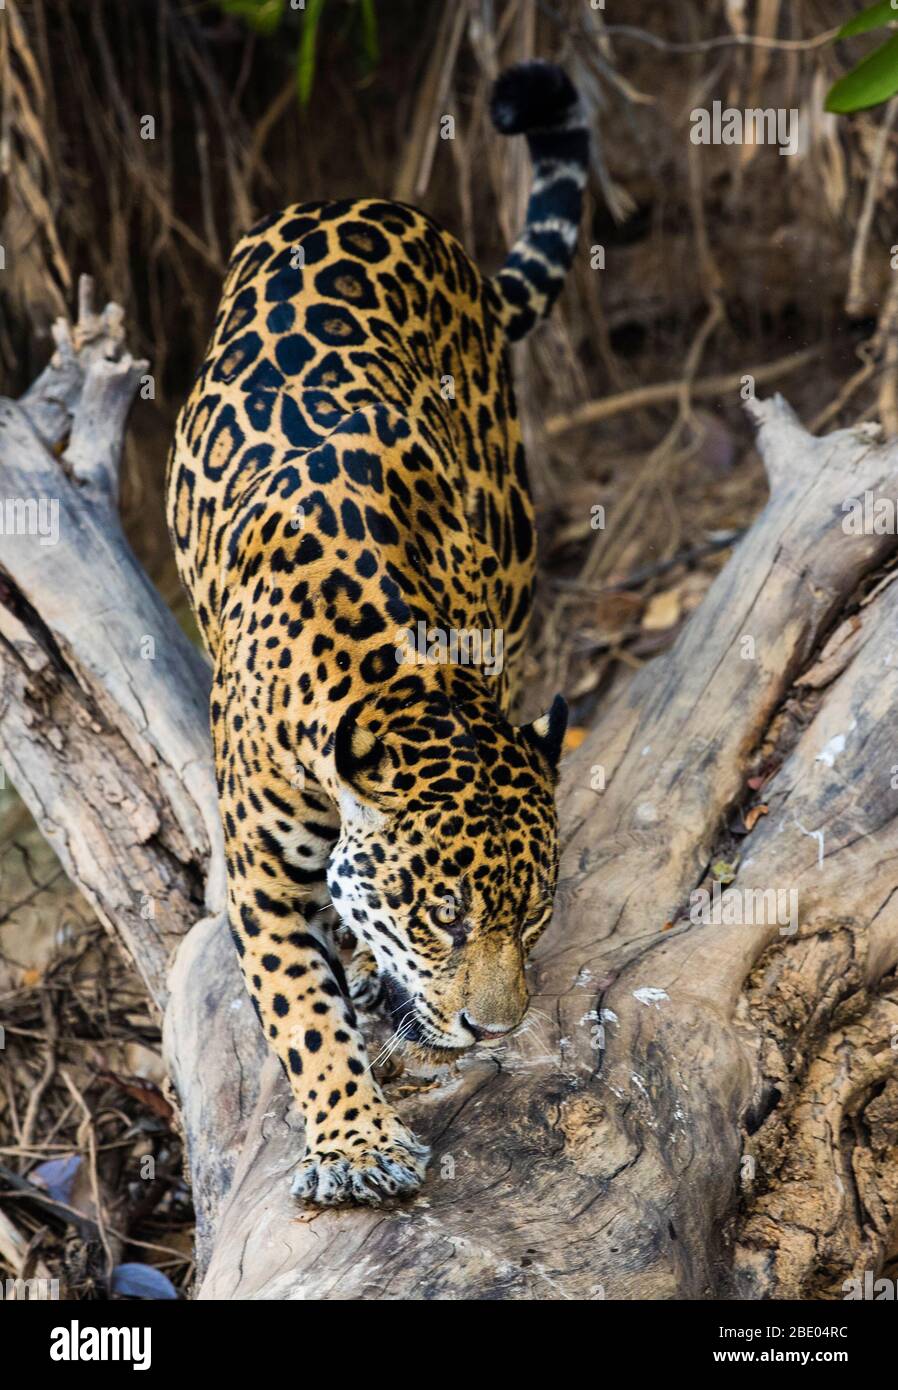 Jaguar (Panthera onca) prowling, Pantanal, Brazil Stock Photo